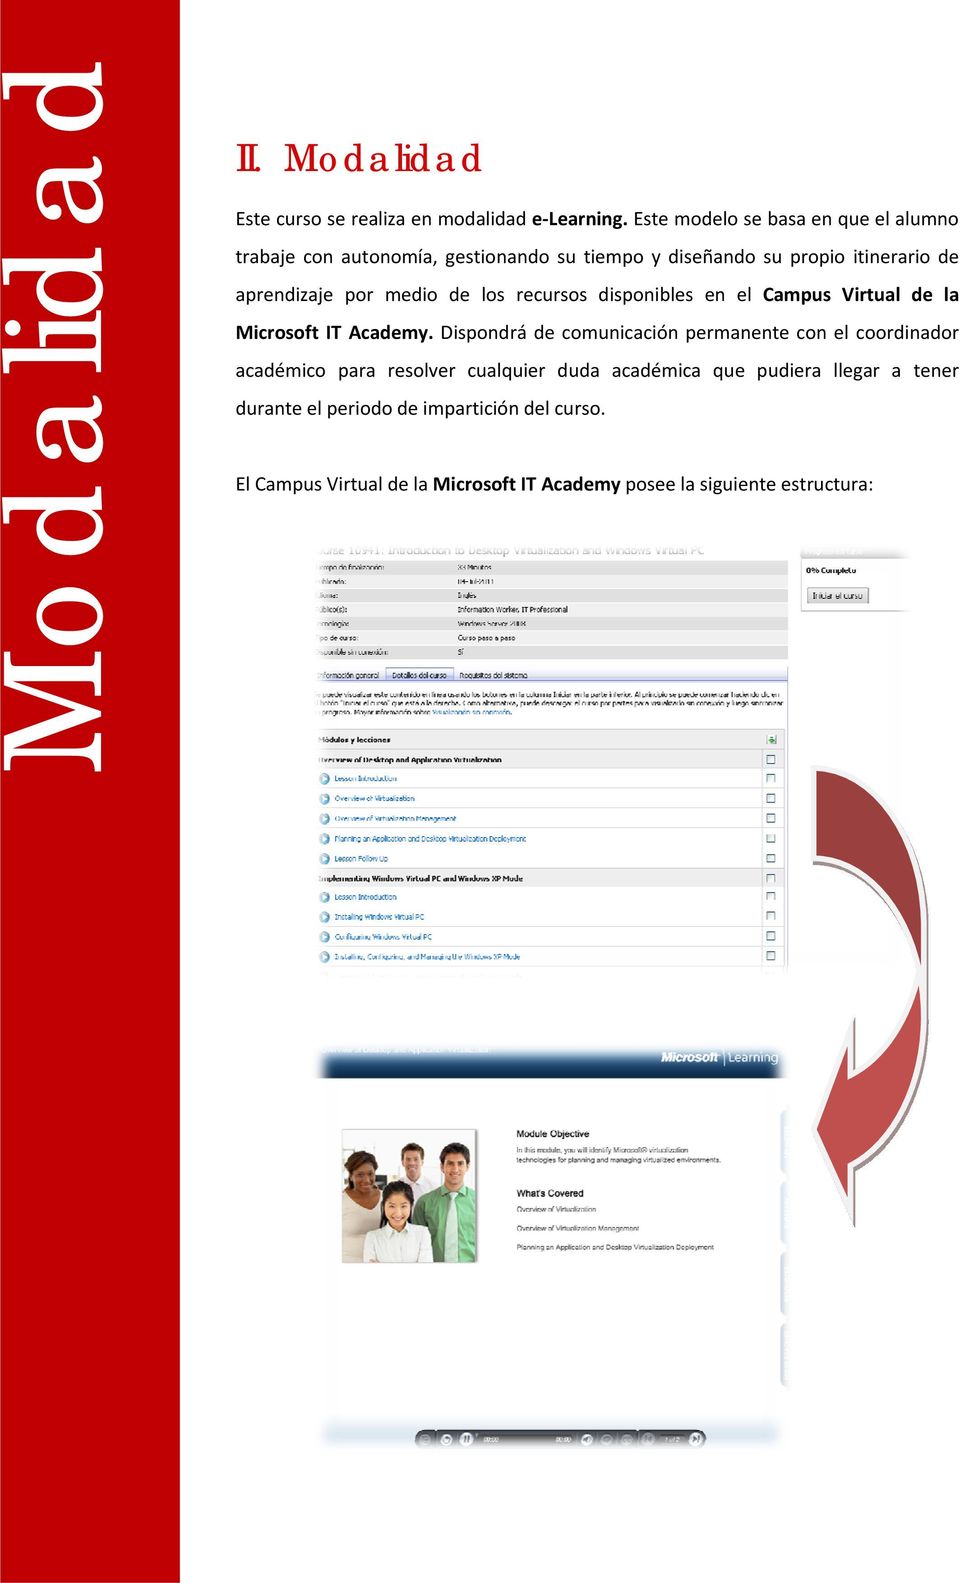 medio de los recursos disponibles en el Campus Virtual de la Microsoft IT Academy.